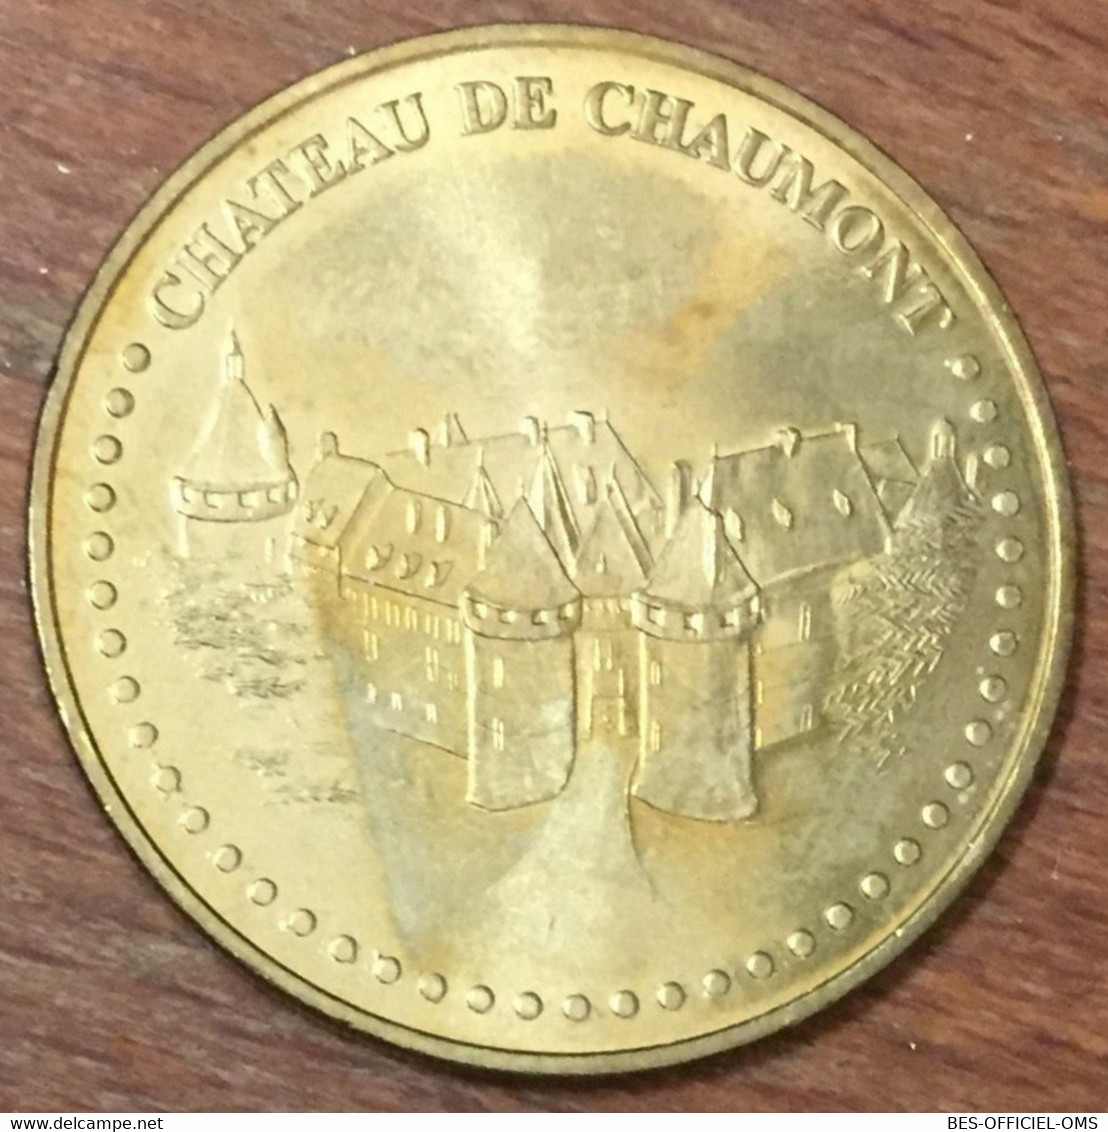 41 CHÂTEAU DE CHAUMONT MDP 2010 MÉDAILLE SOUVENIR MONNAIE DE PARIS JETON TOURISTIQUE MEDALS COINS TOKENS - 2010